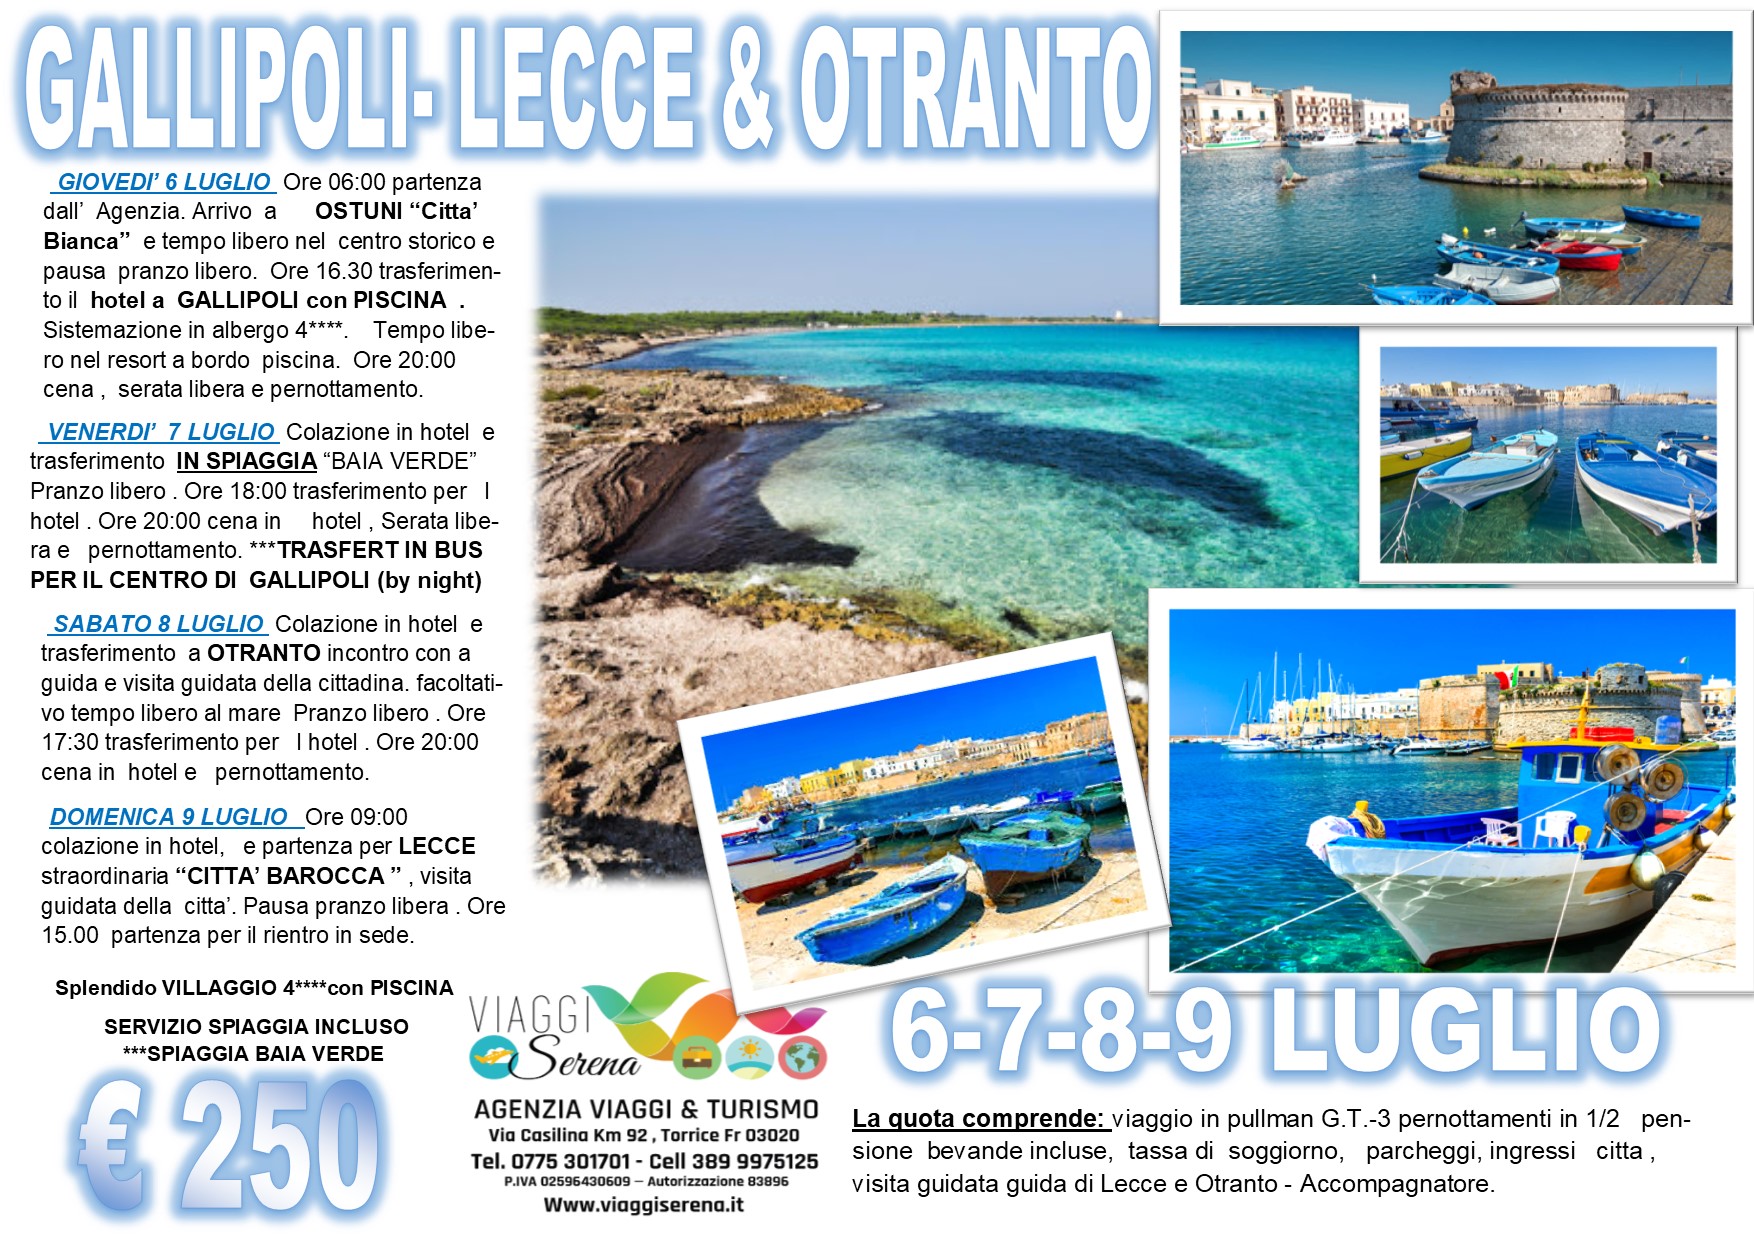 Viaggi di Gruppo: Otranto, Gallipoli, Baia verde & Lecce 6-7-8-9 Luglio €250,00